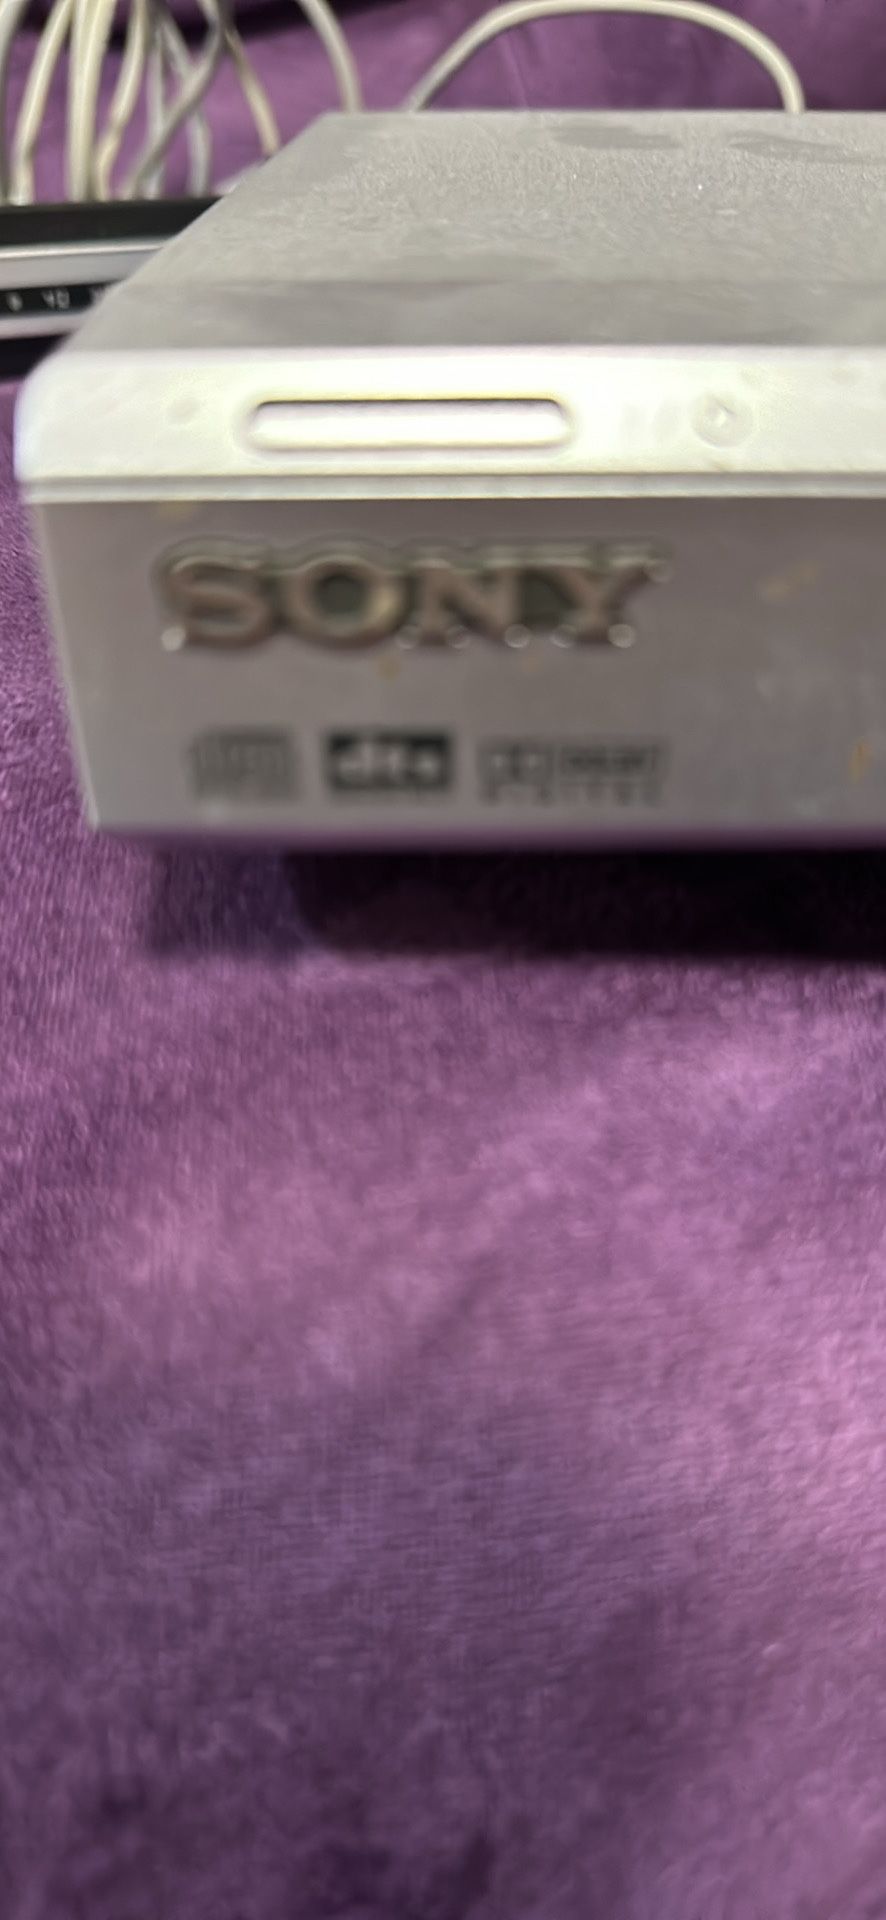 Sony Dvd/Cd Player